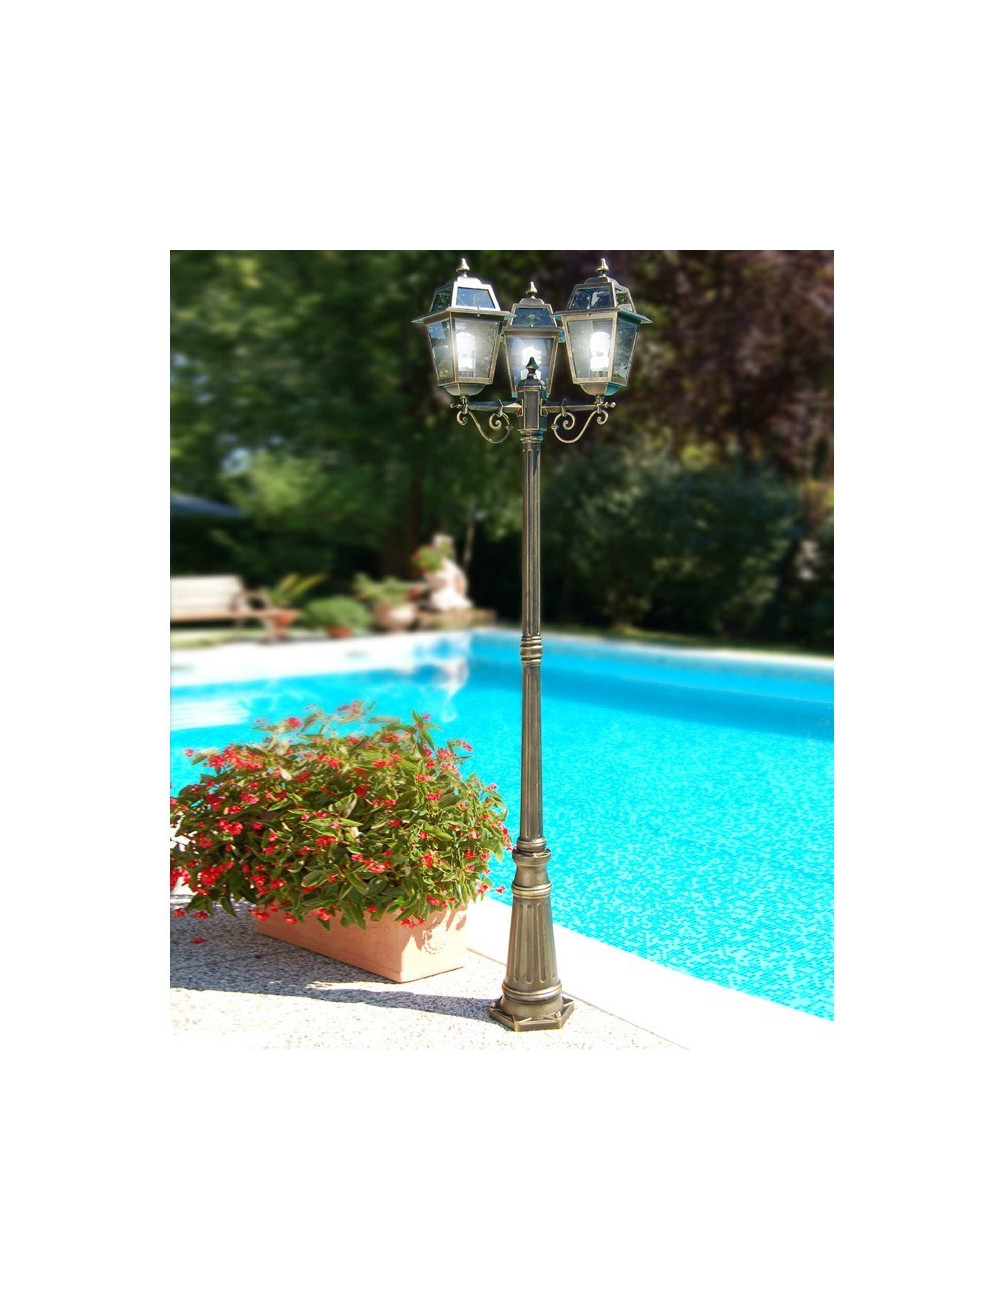 ARTEMIDE Palo Lampadaire Classic Lantern Outdoor Garden Lighting